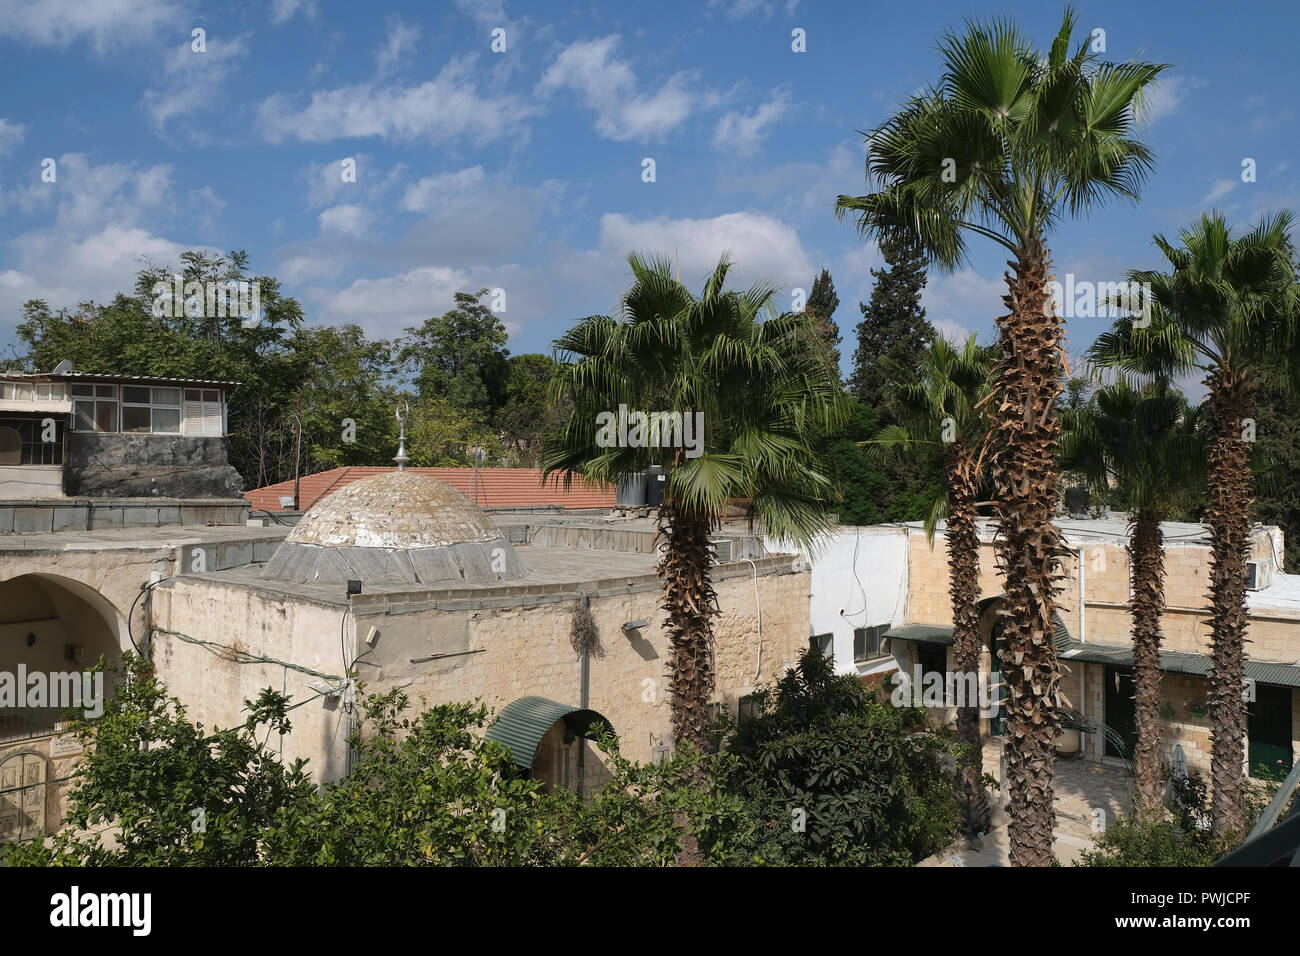 Vue de l'enceinte de l'Hospice pour les pèlerins musulmans indiens de l'Inde de la famille Ansari prendre en charge pendant environ 100 ans situé dans le quartier musulman de la vieille ville de Jérusalem Est, Israël. Banque D'Images